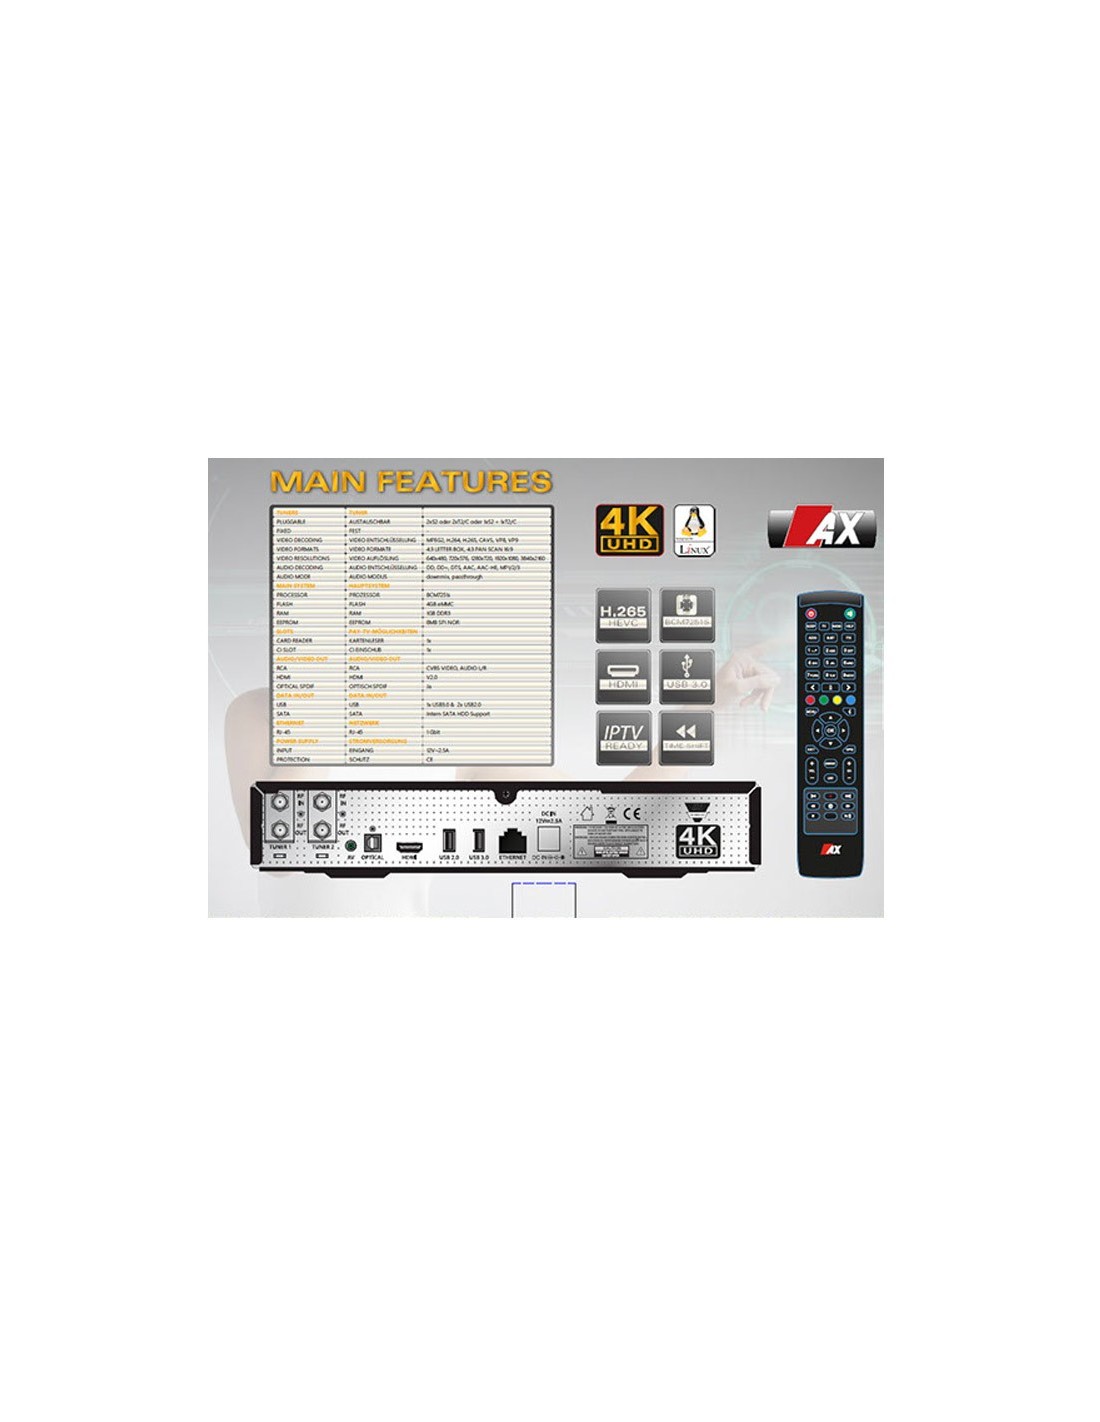 Receptor AX 4K-Box HD51 UHD 2160p E2 Linux con 1 x Sintonizador Sat grabación DVB-S2 Mediante USB o Disco Duro con PVR 